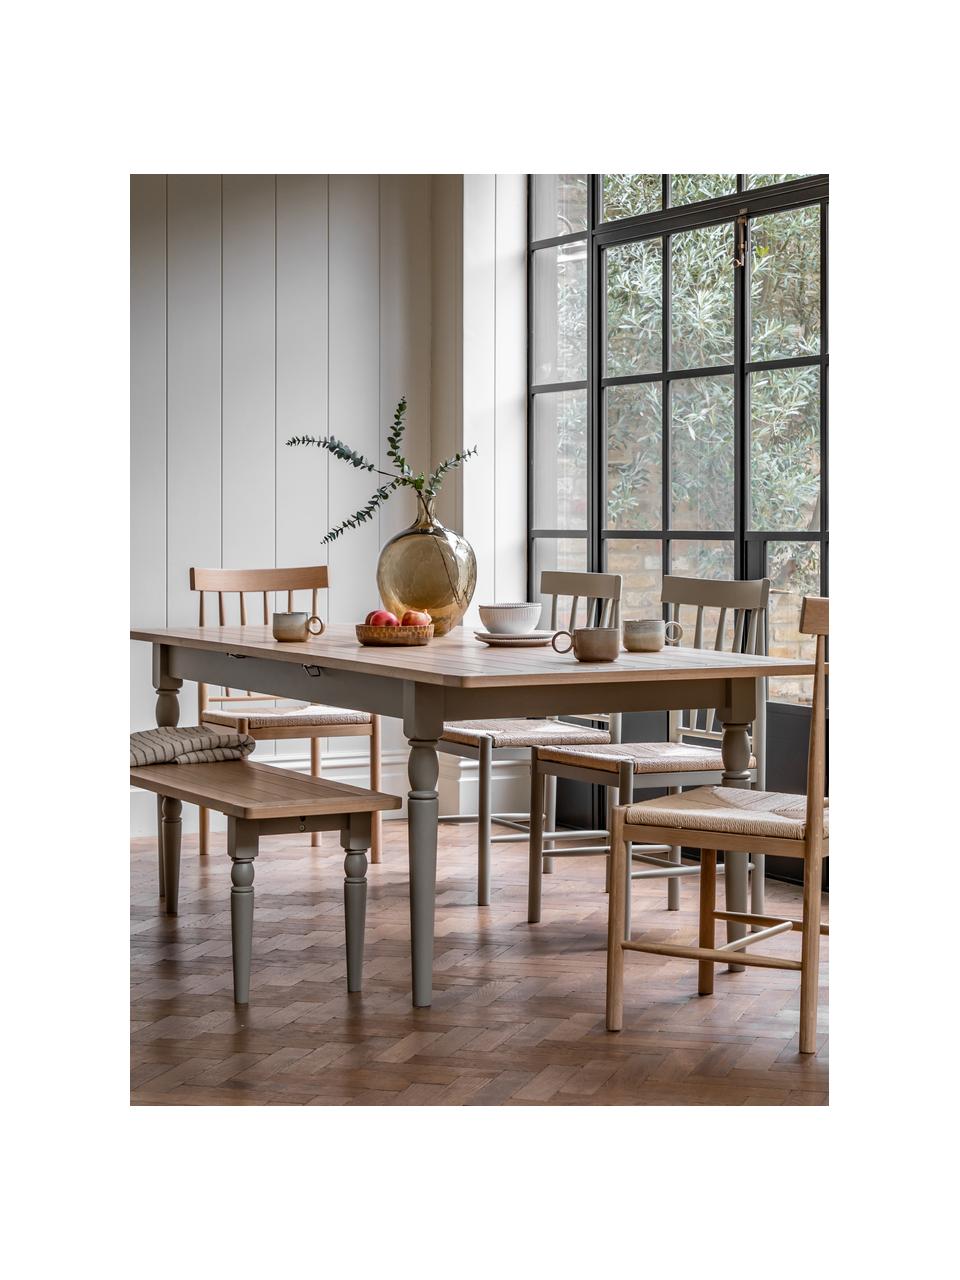 Stół do jadalni z drewna Eton, rozkładany, Blat: drewno dębowe, płyta pilś, Stelaż: drewno dębowe lakierowane, Drewno dębowe, taupe, S 180 x G 95 cm